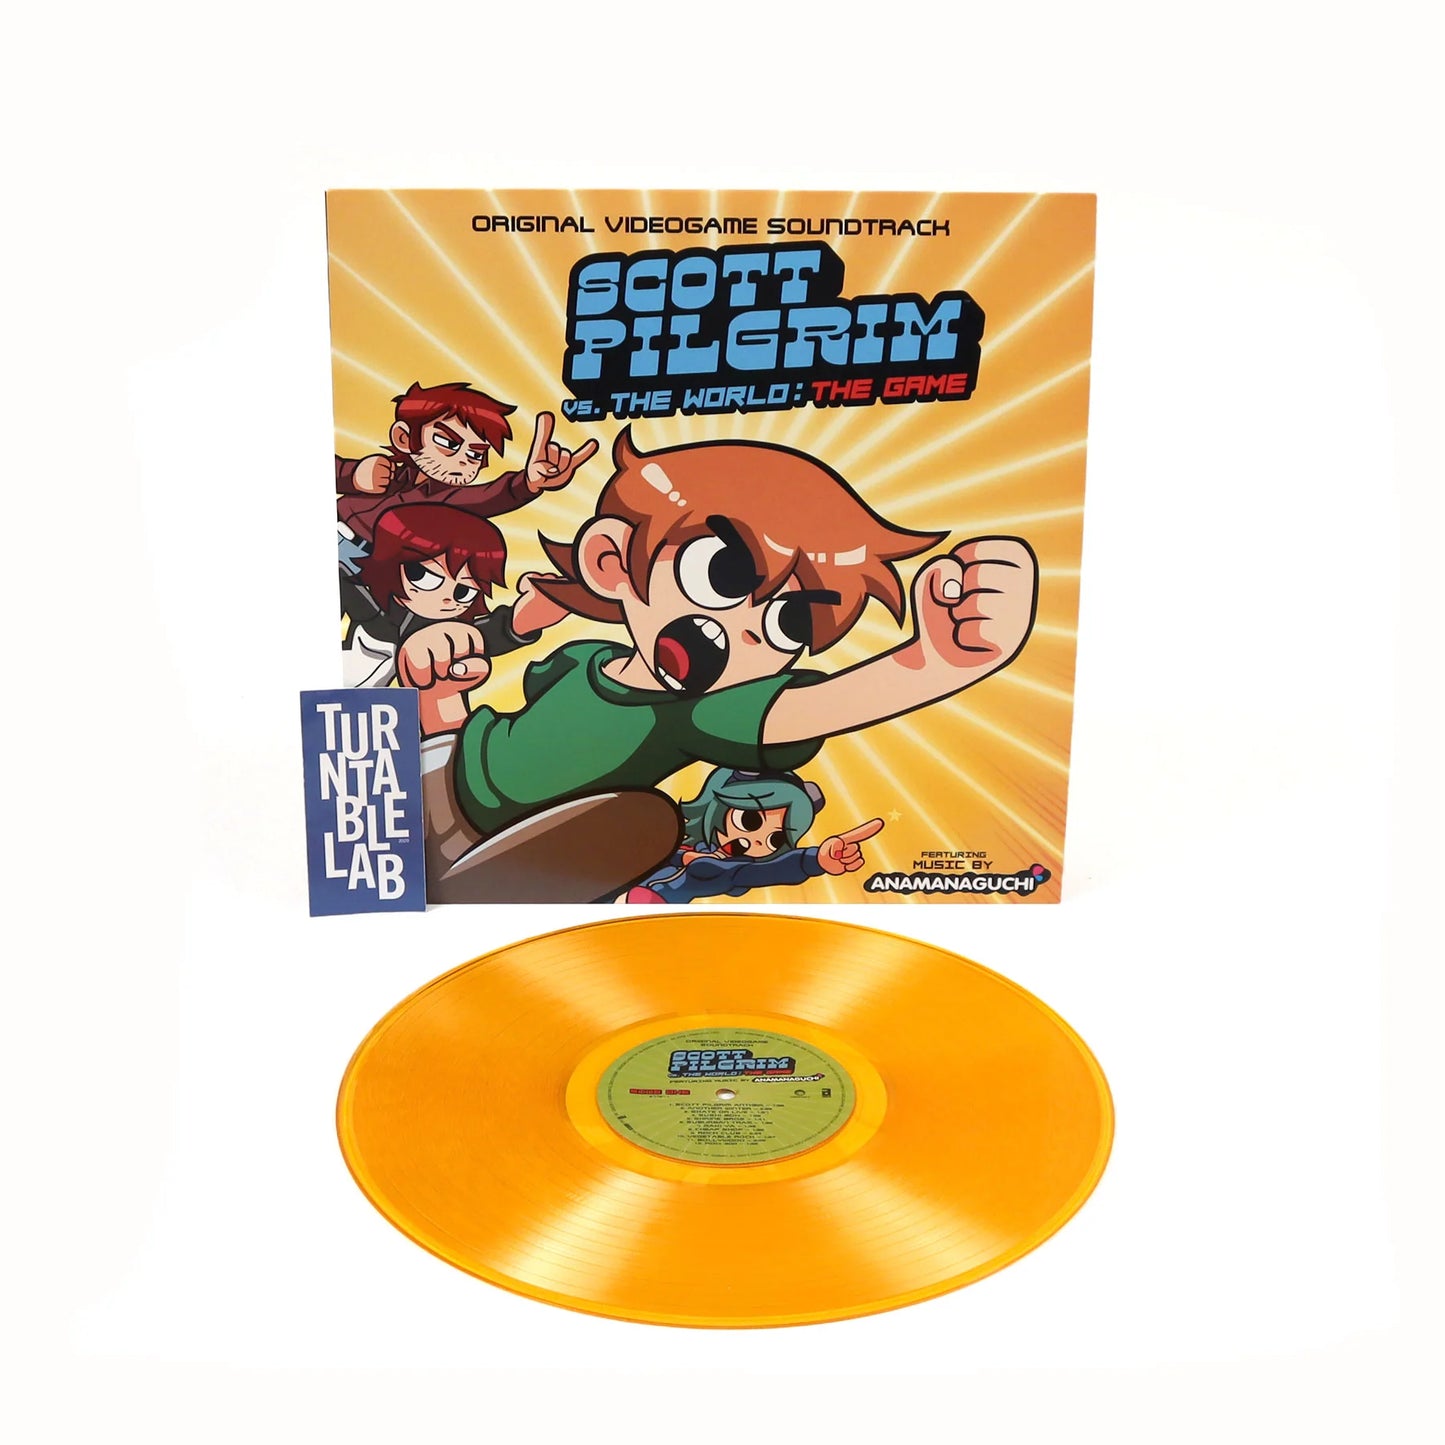 Anamanaguchi ''Scott Pilgrim Vs. The World: The Game (Original Videogame Soundtrack)'' LP (Orange Vinyl)